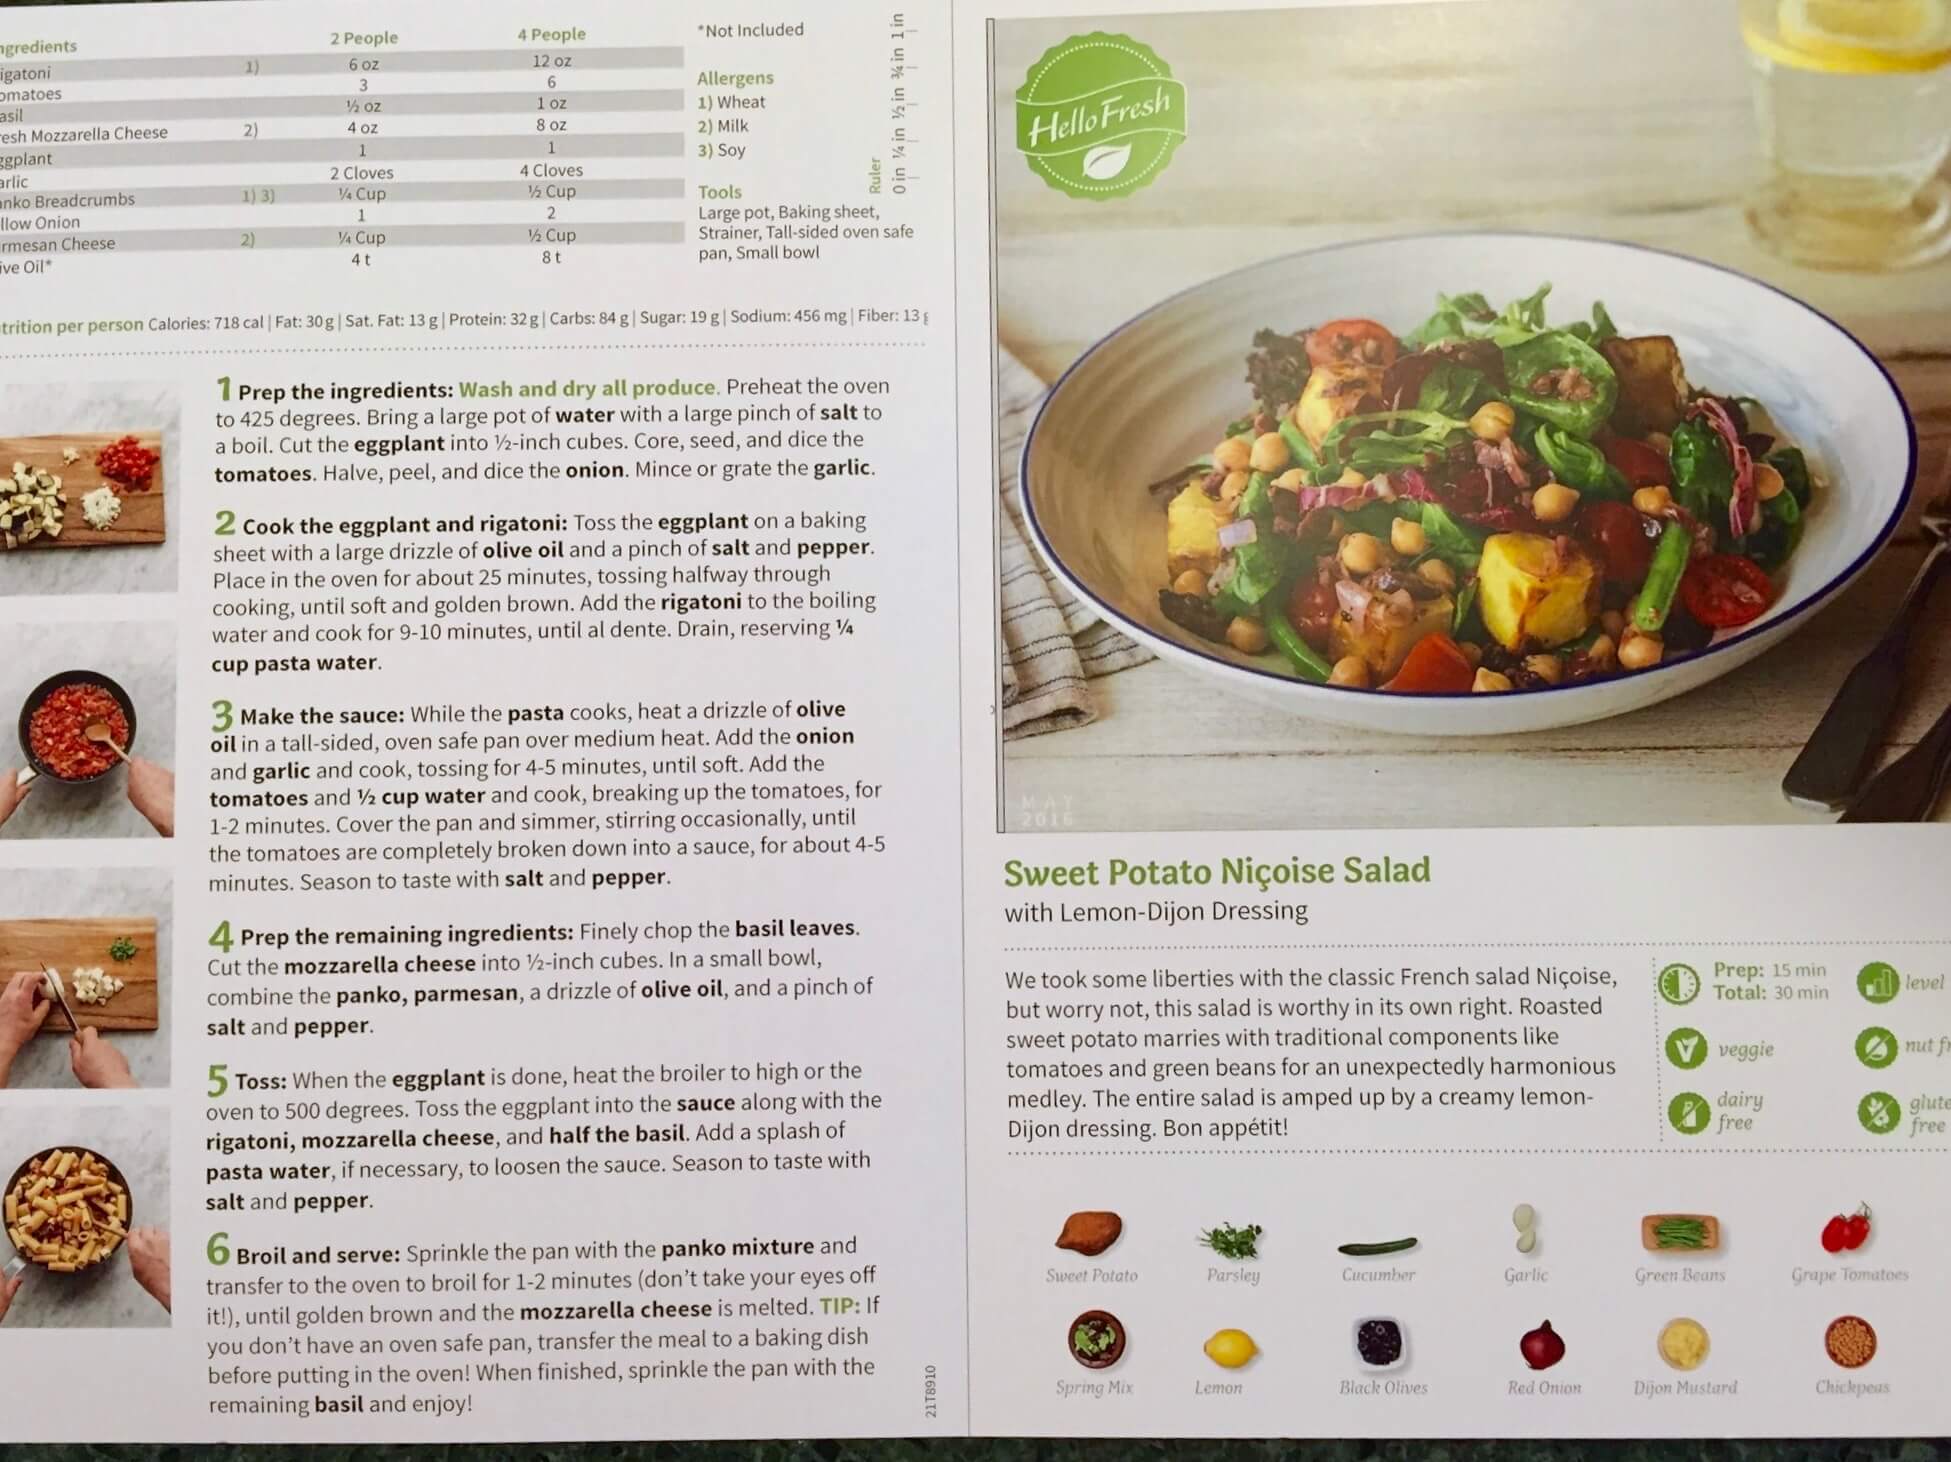 May 2016 Hello Fresh Vegetarian Subscription Box Review Coupon